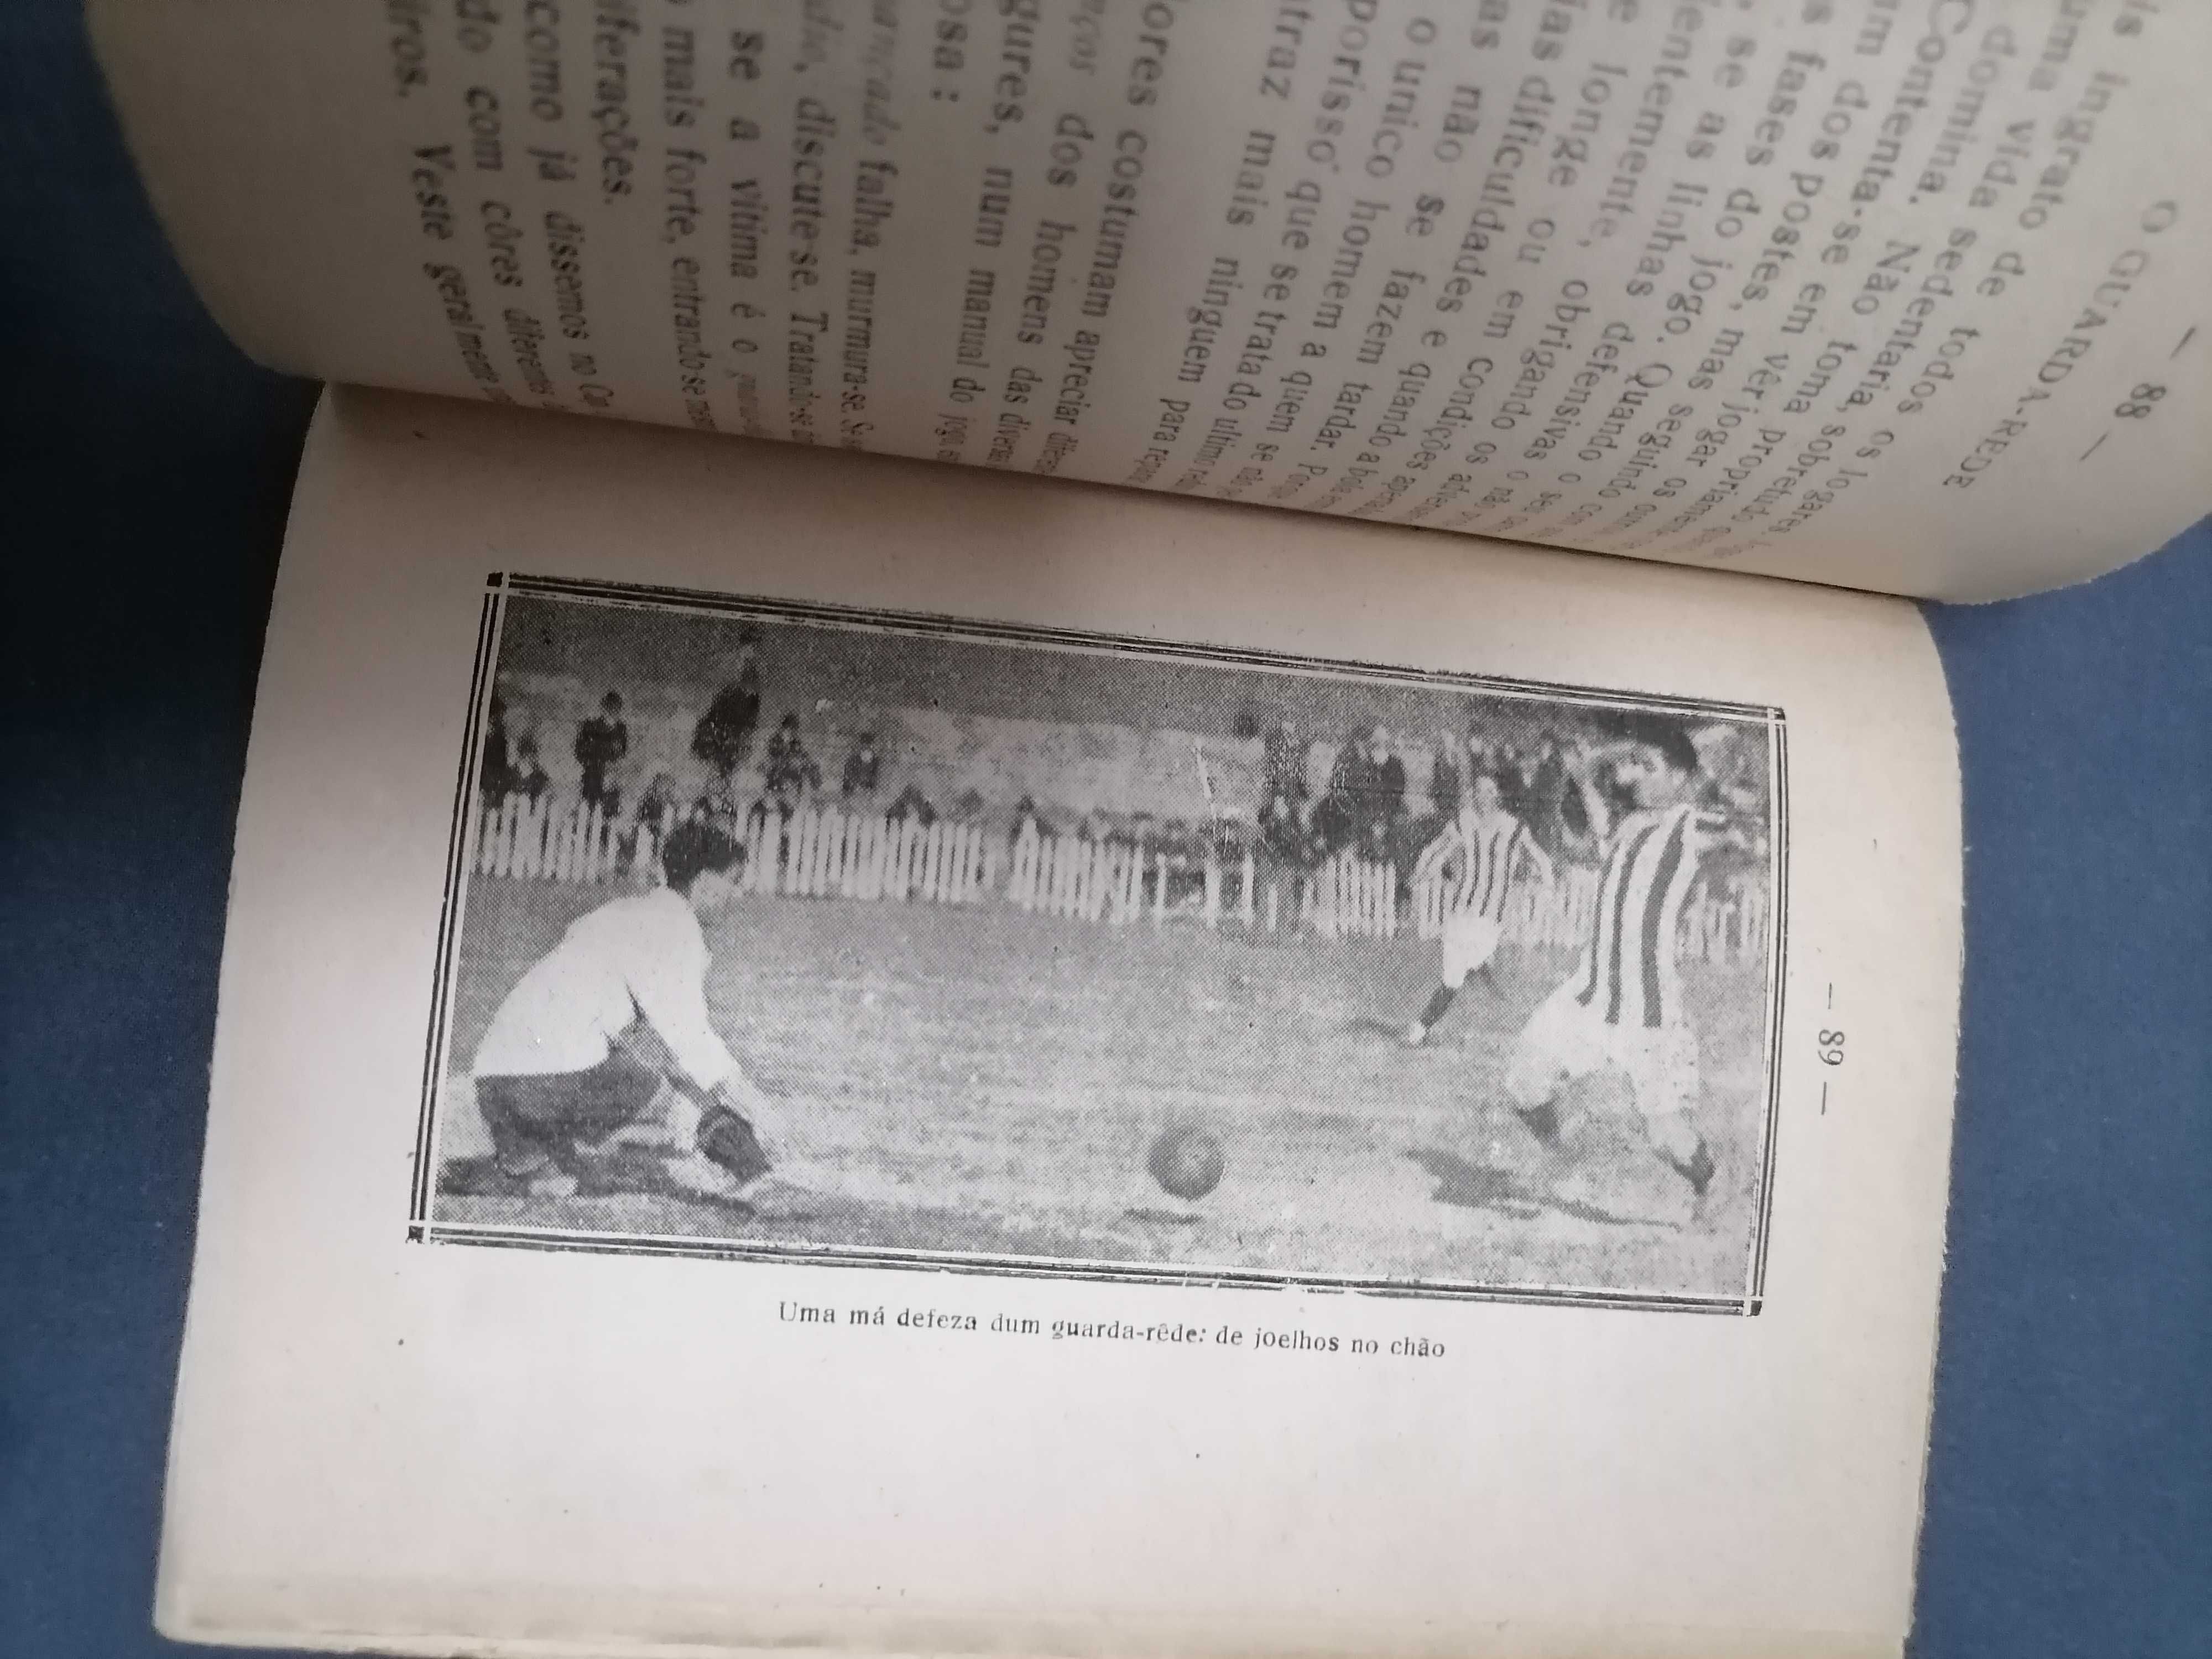 FOOT-BALL 1927 por Ribeiro dos Reis Um dos MAIORES VULTOS do Futebol